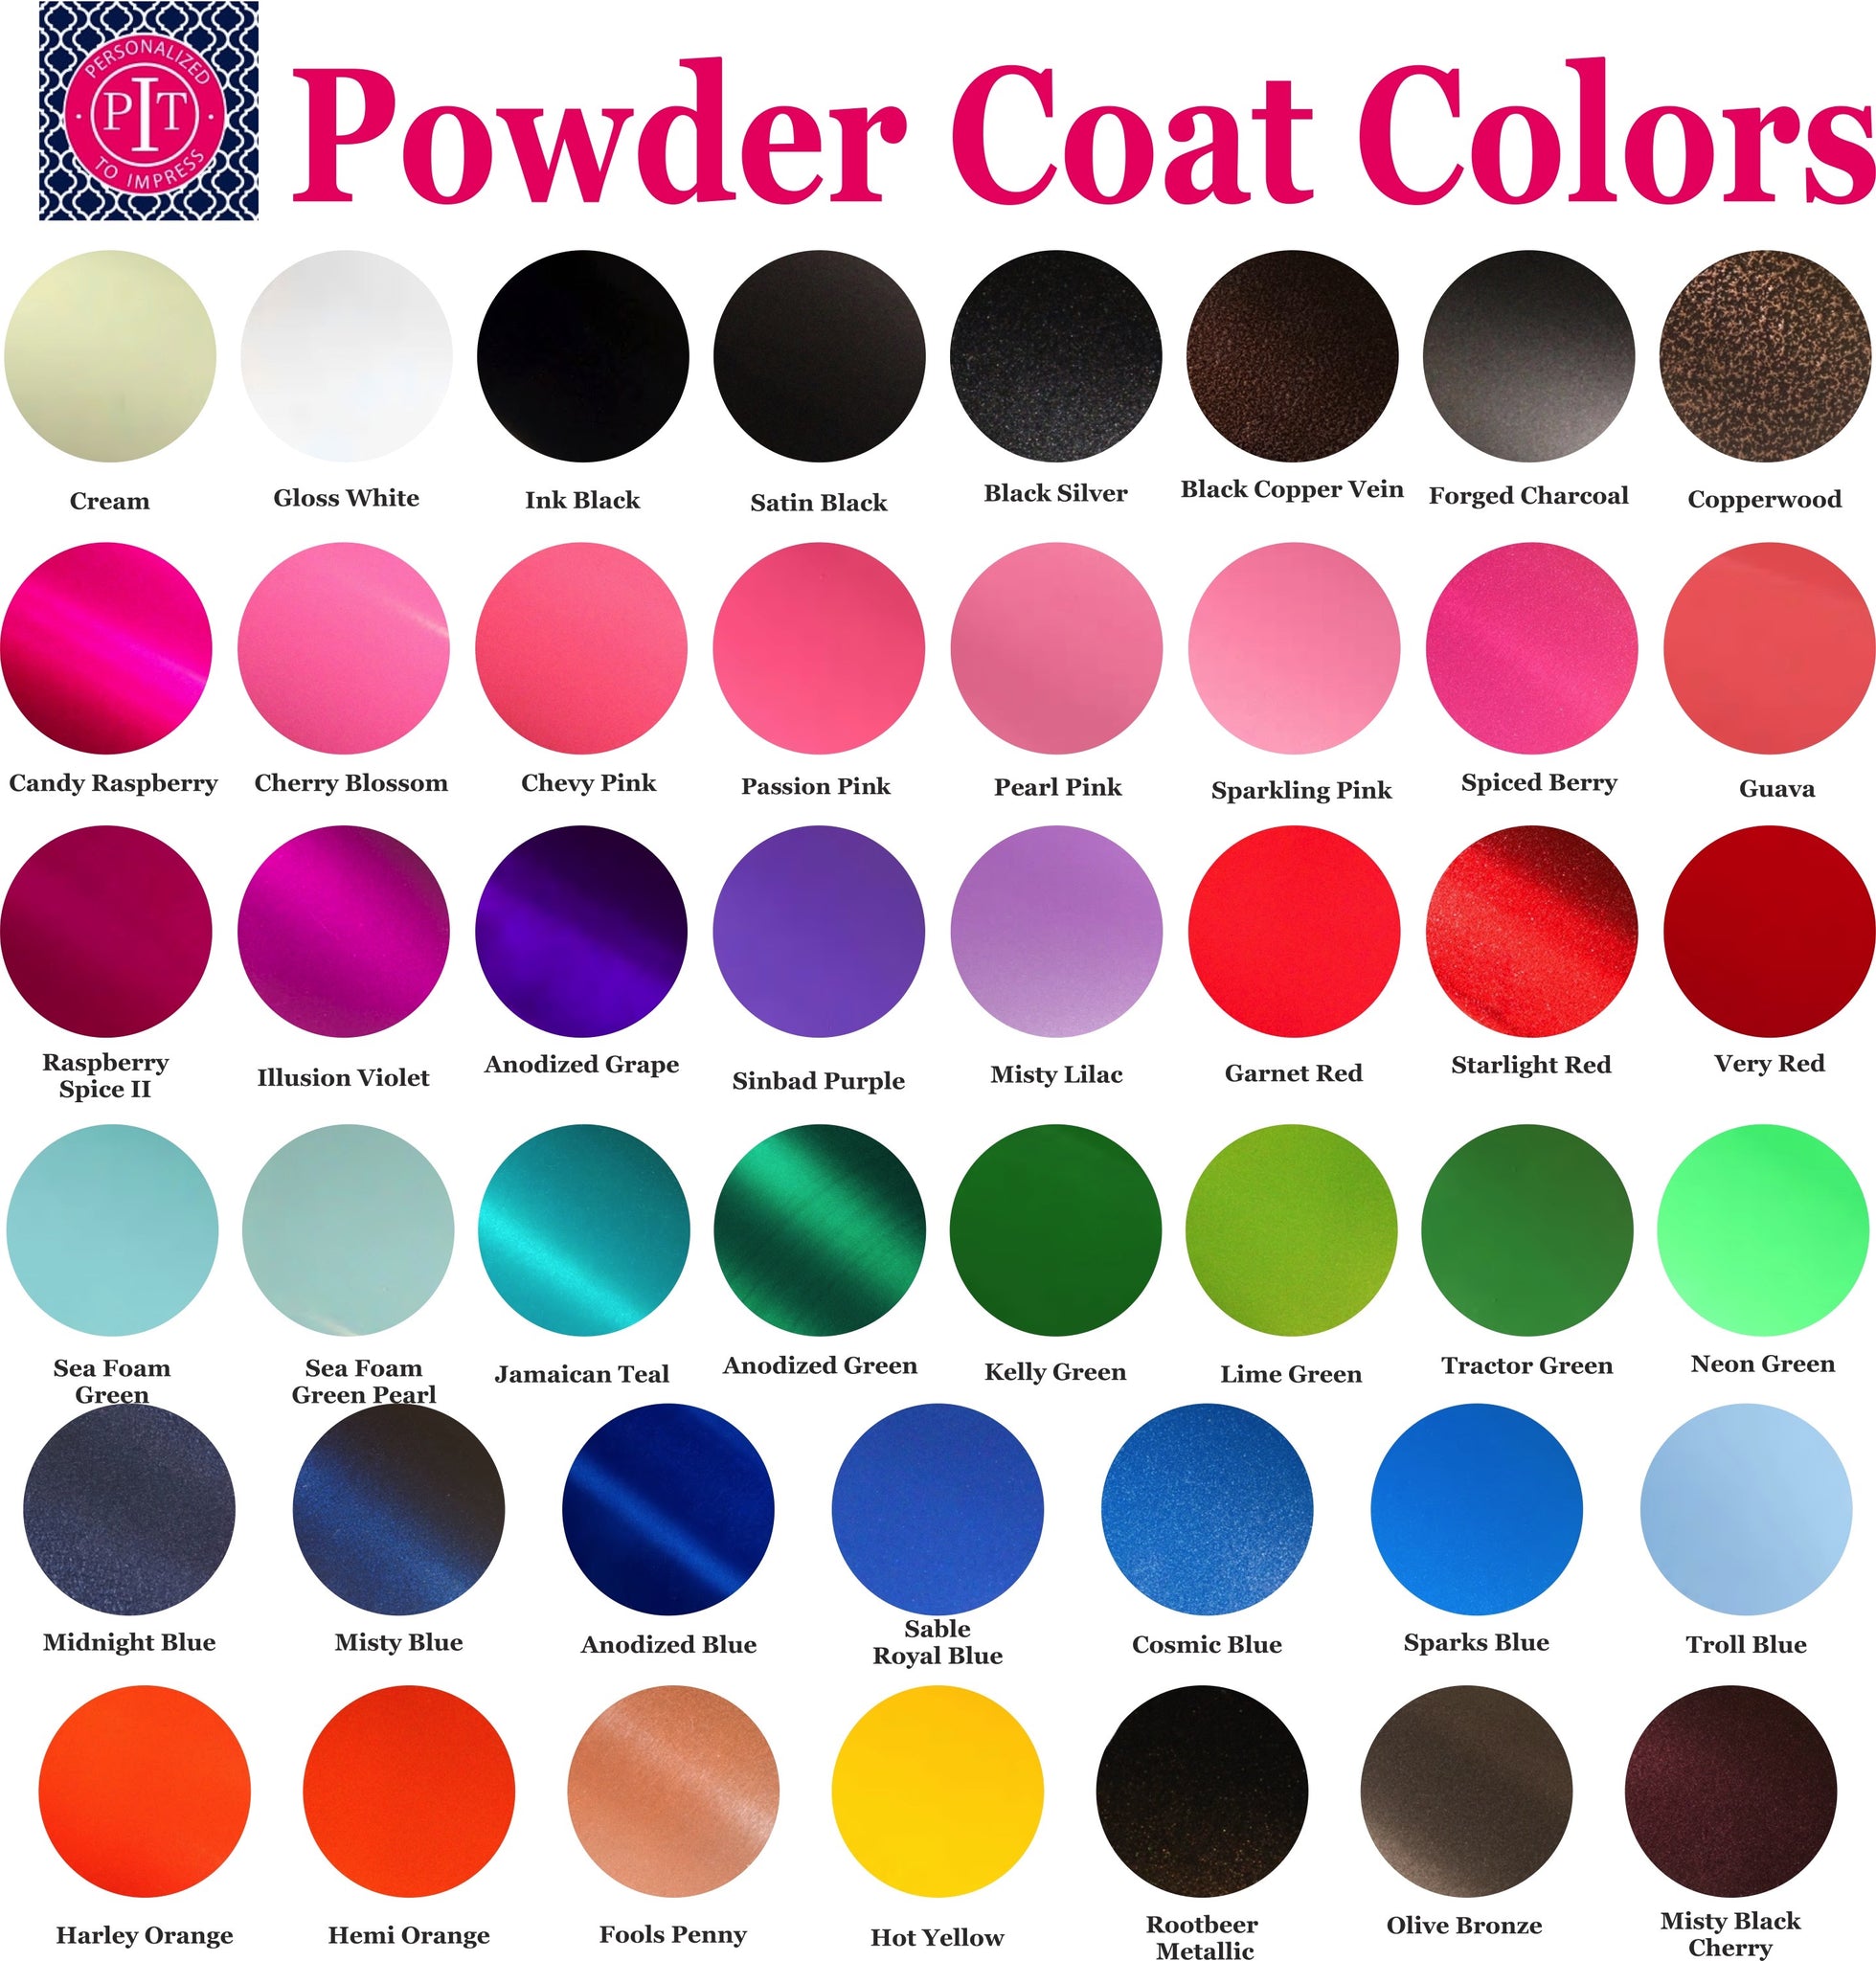 https://personalizedtoimpress.com/cdn/shop/products/Powder_Coat_Color_Chart_94bbf0d0-1a43-4370-a495-4daecf998631_1024x1024@2x.jpg?v=1513379759